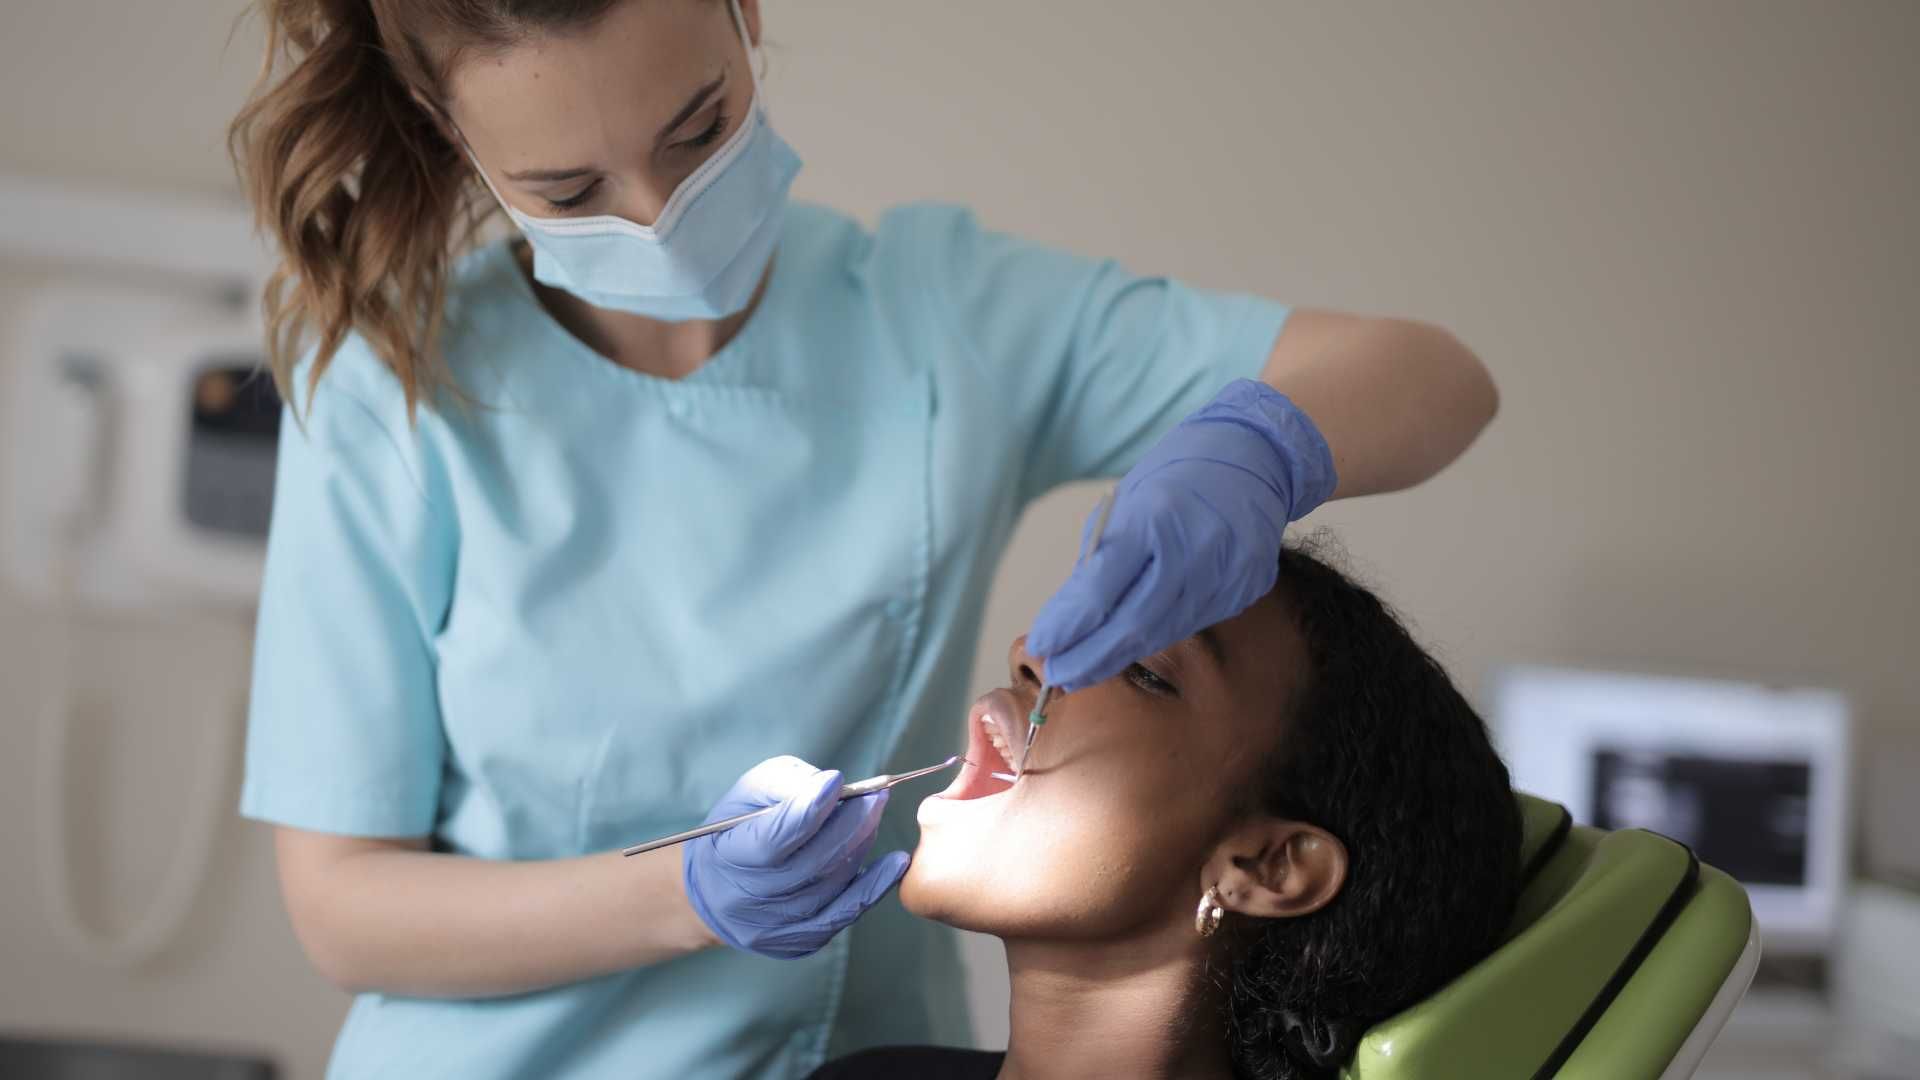 پرکردن دندان یک سطحی با آمالگام ایرانی دکتر ثنا نوری وند در تبریز 1